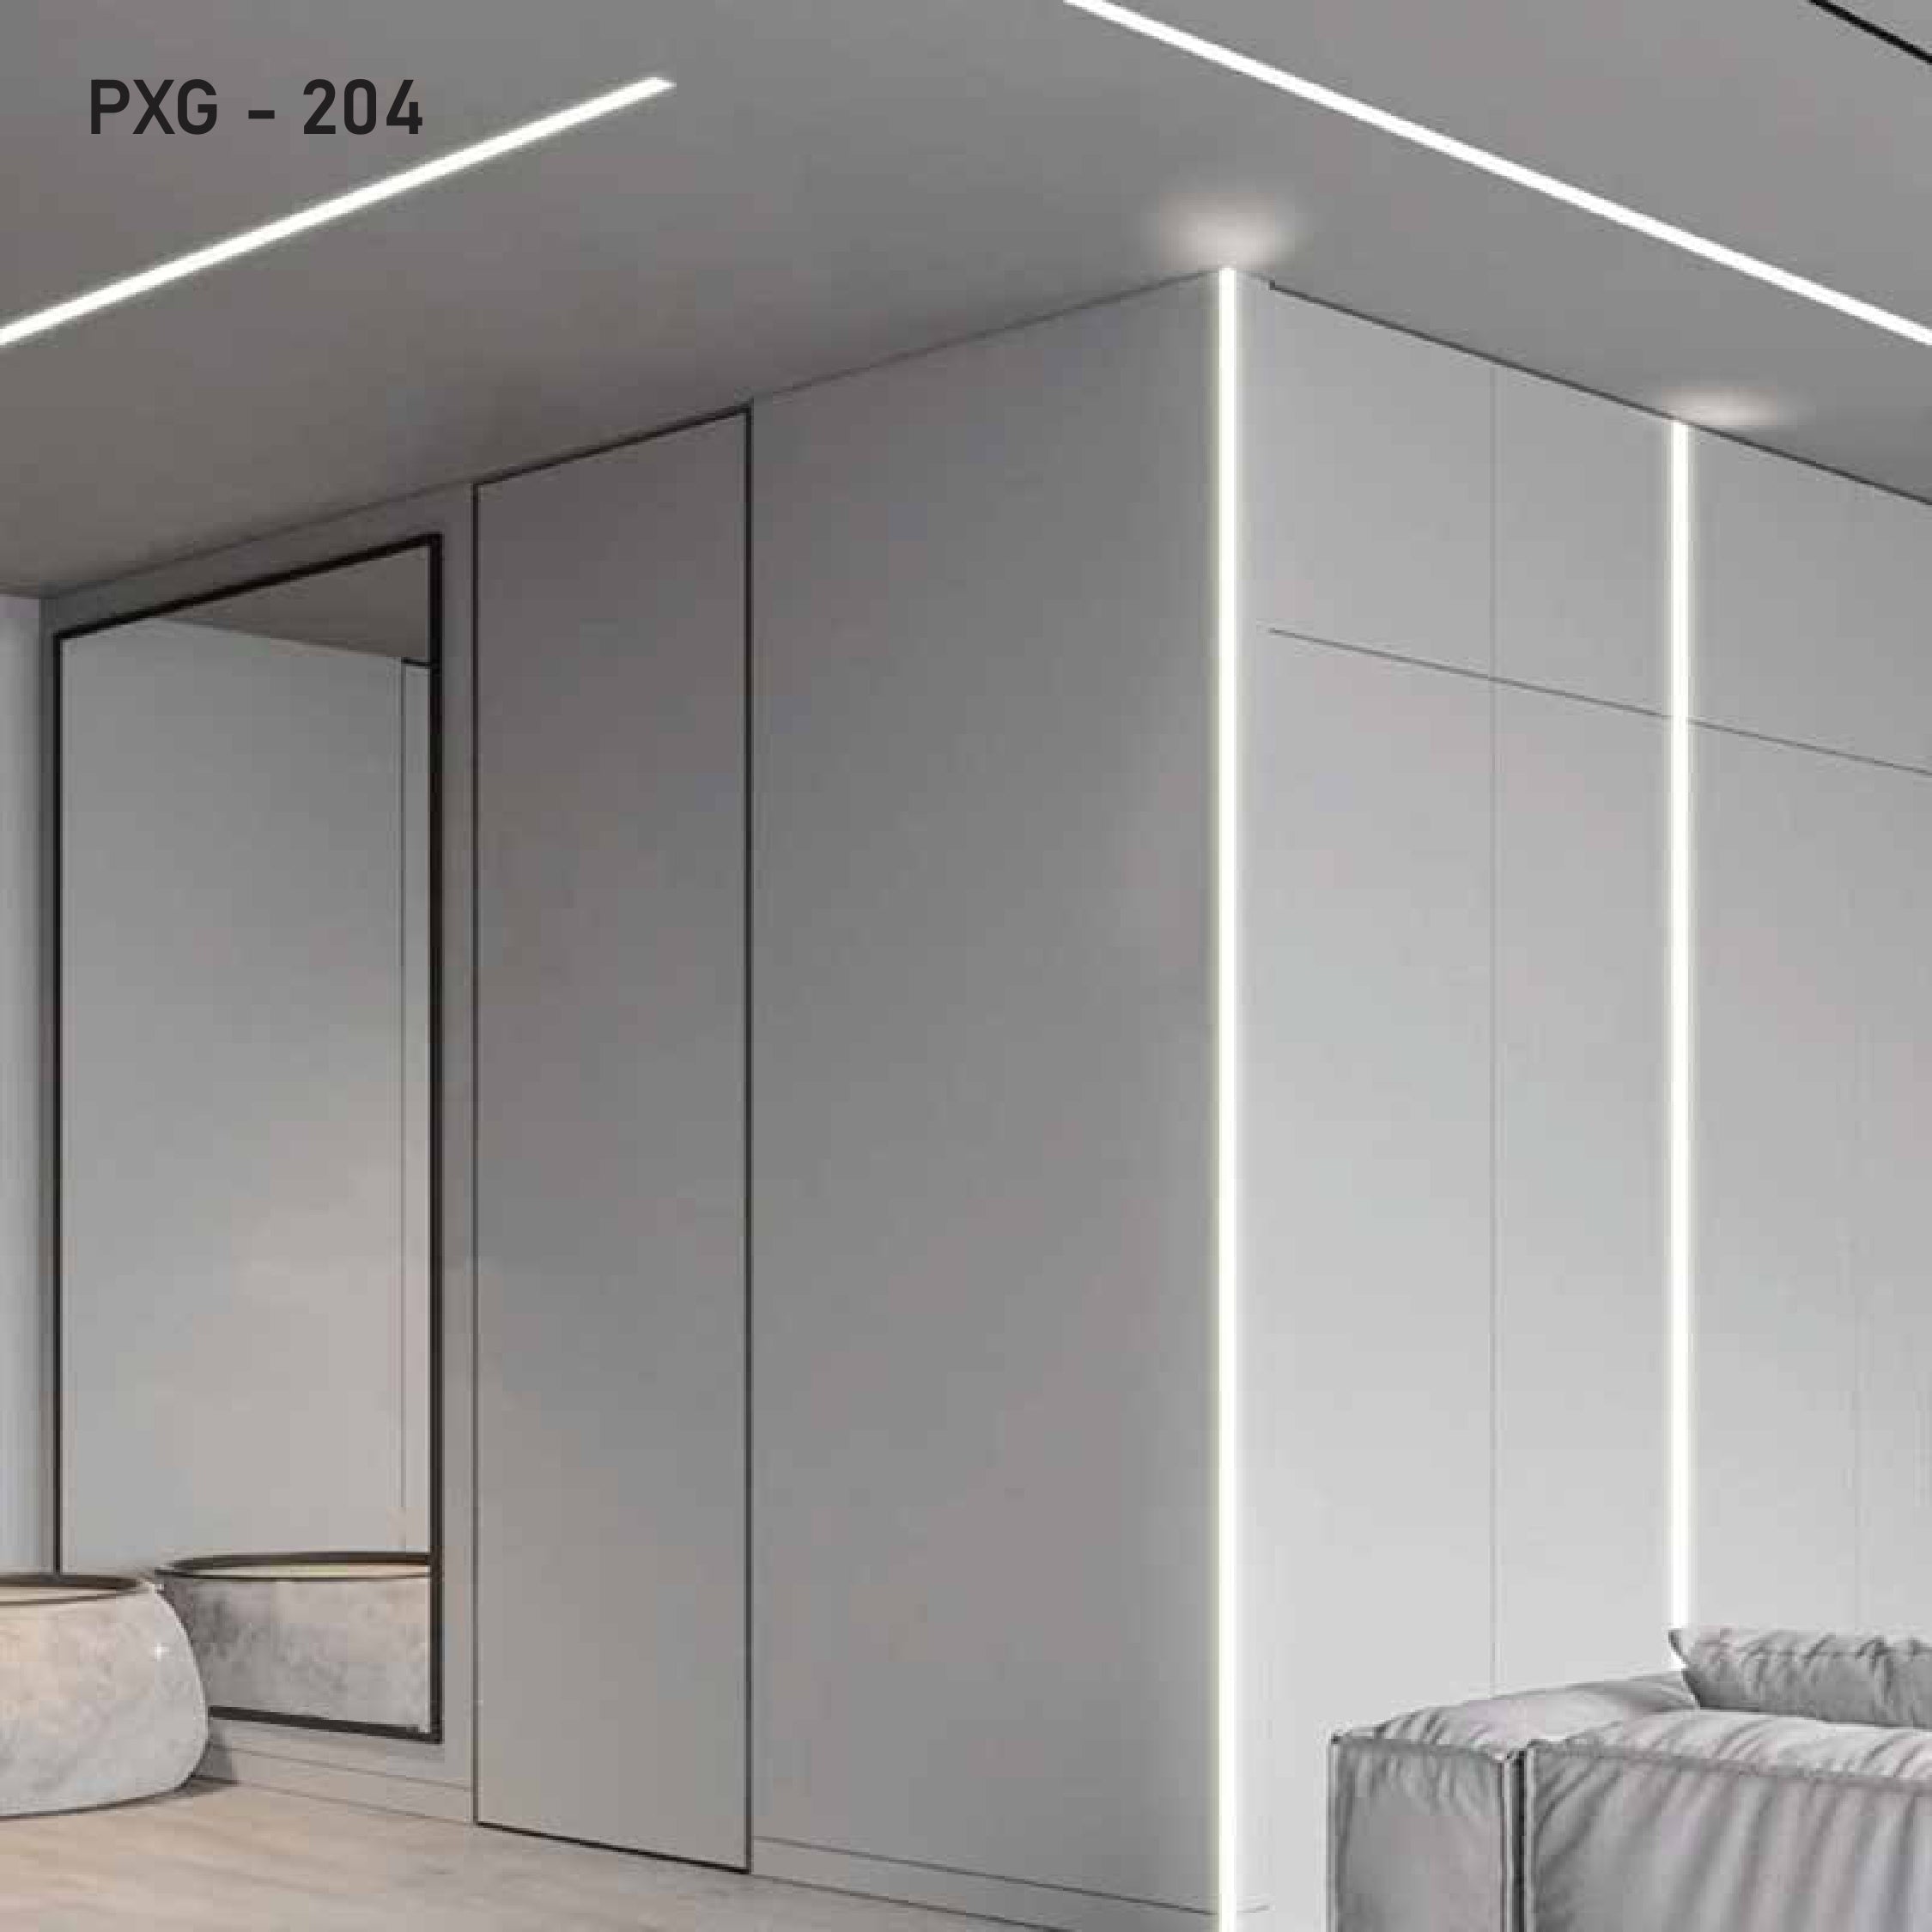 Aluminium Profile Light | PXG-204